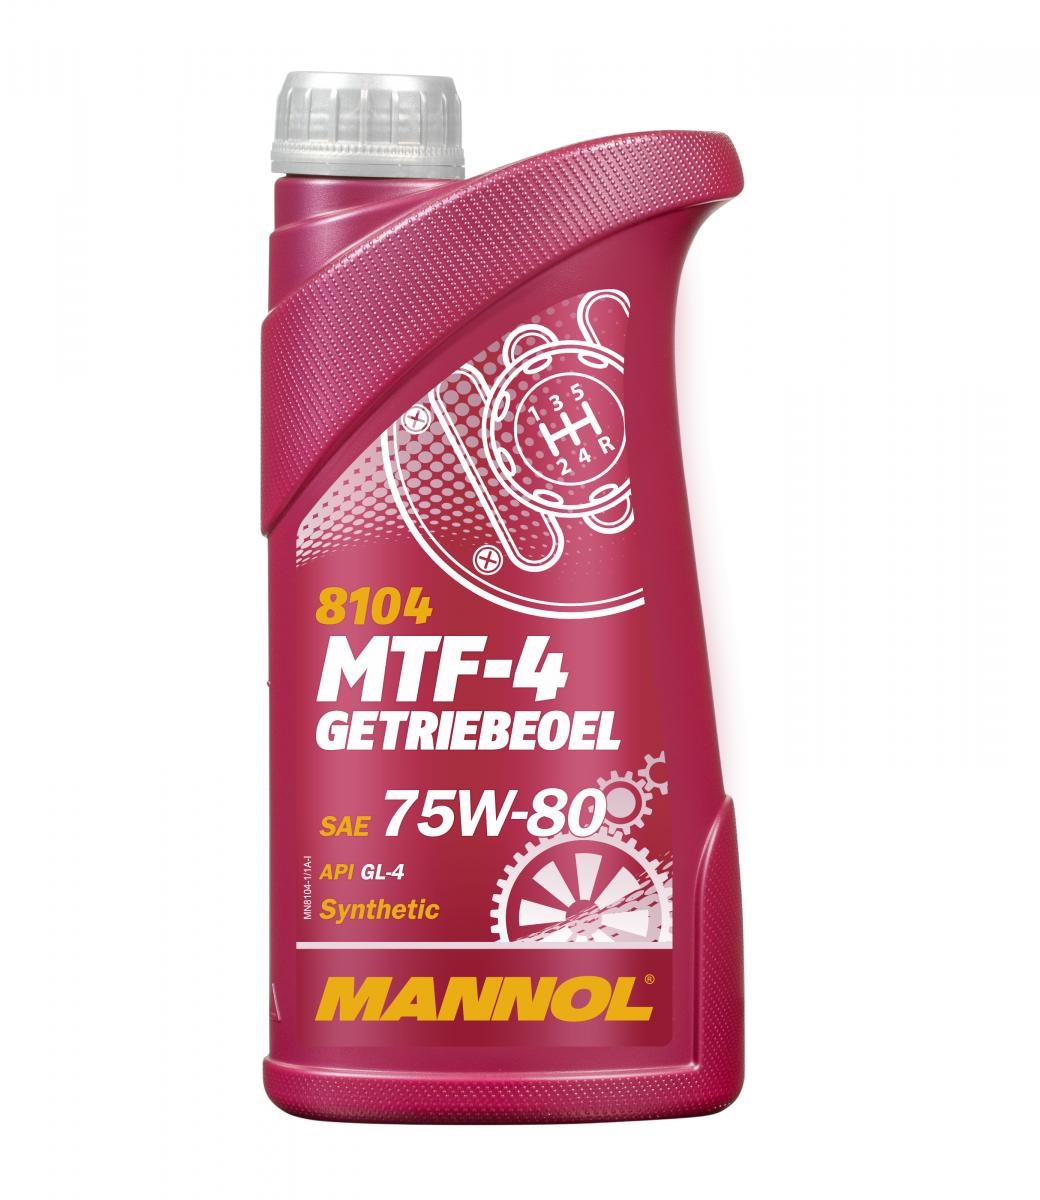 MANNOL MTF-4, GL-4 MN8104-1 Transmission fluid 75W-80, Capacity: 1l